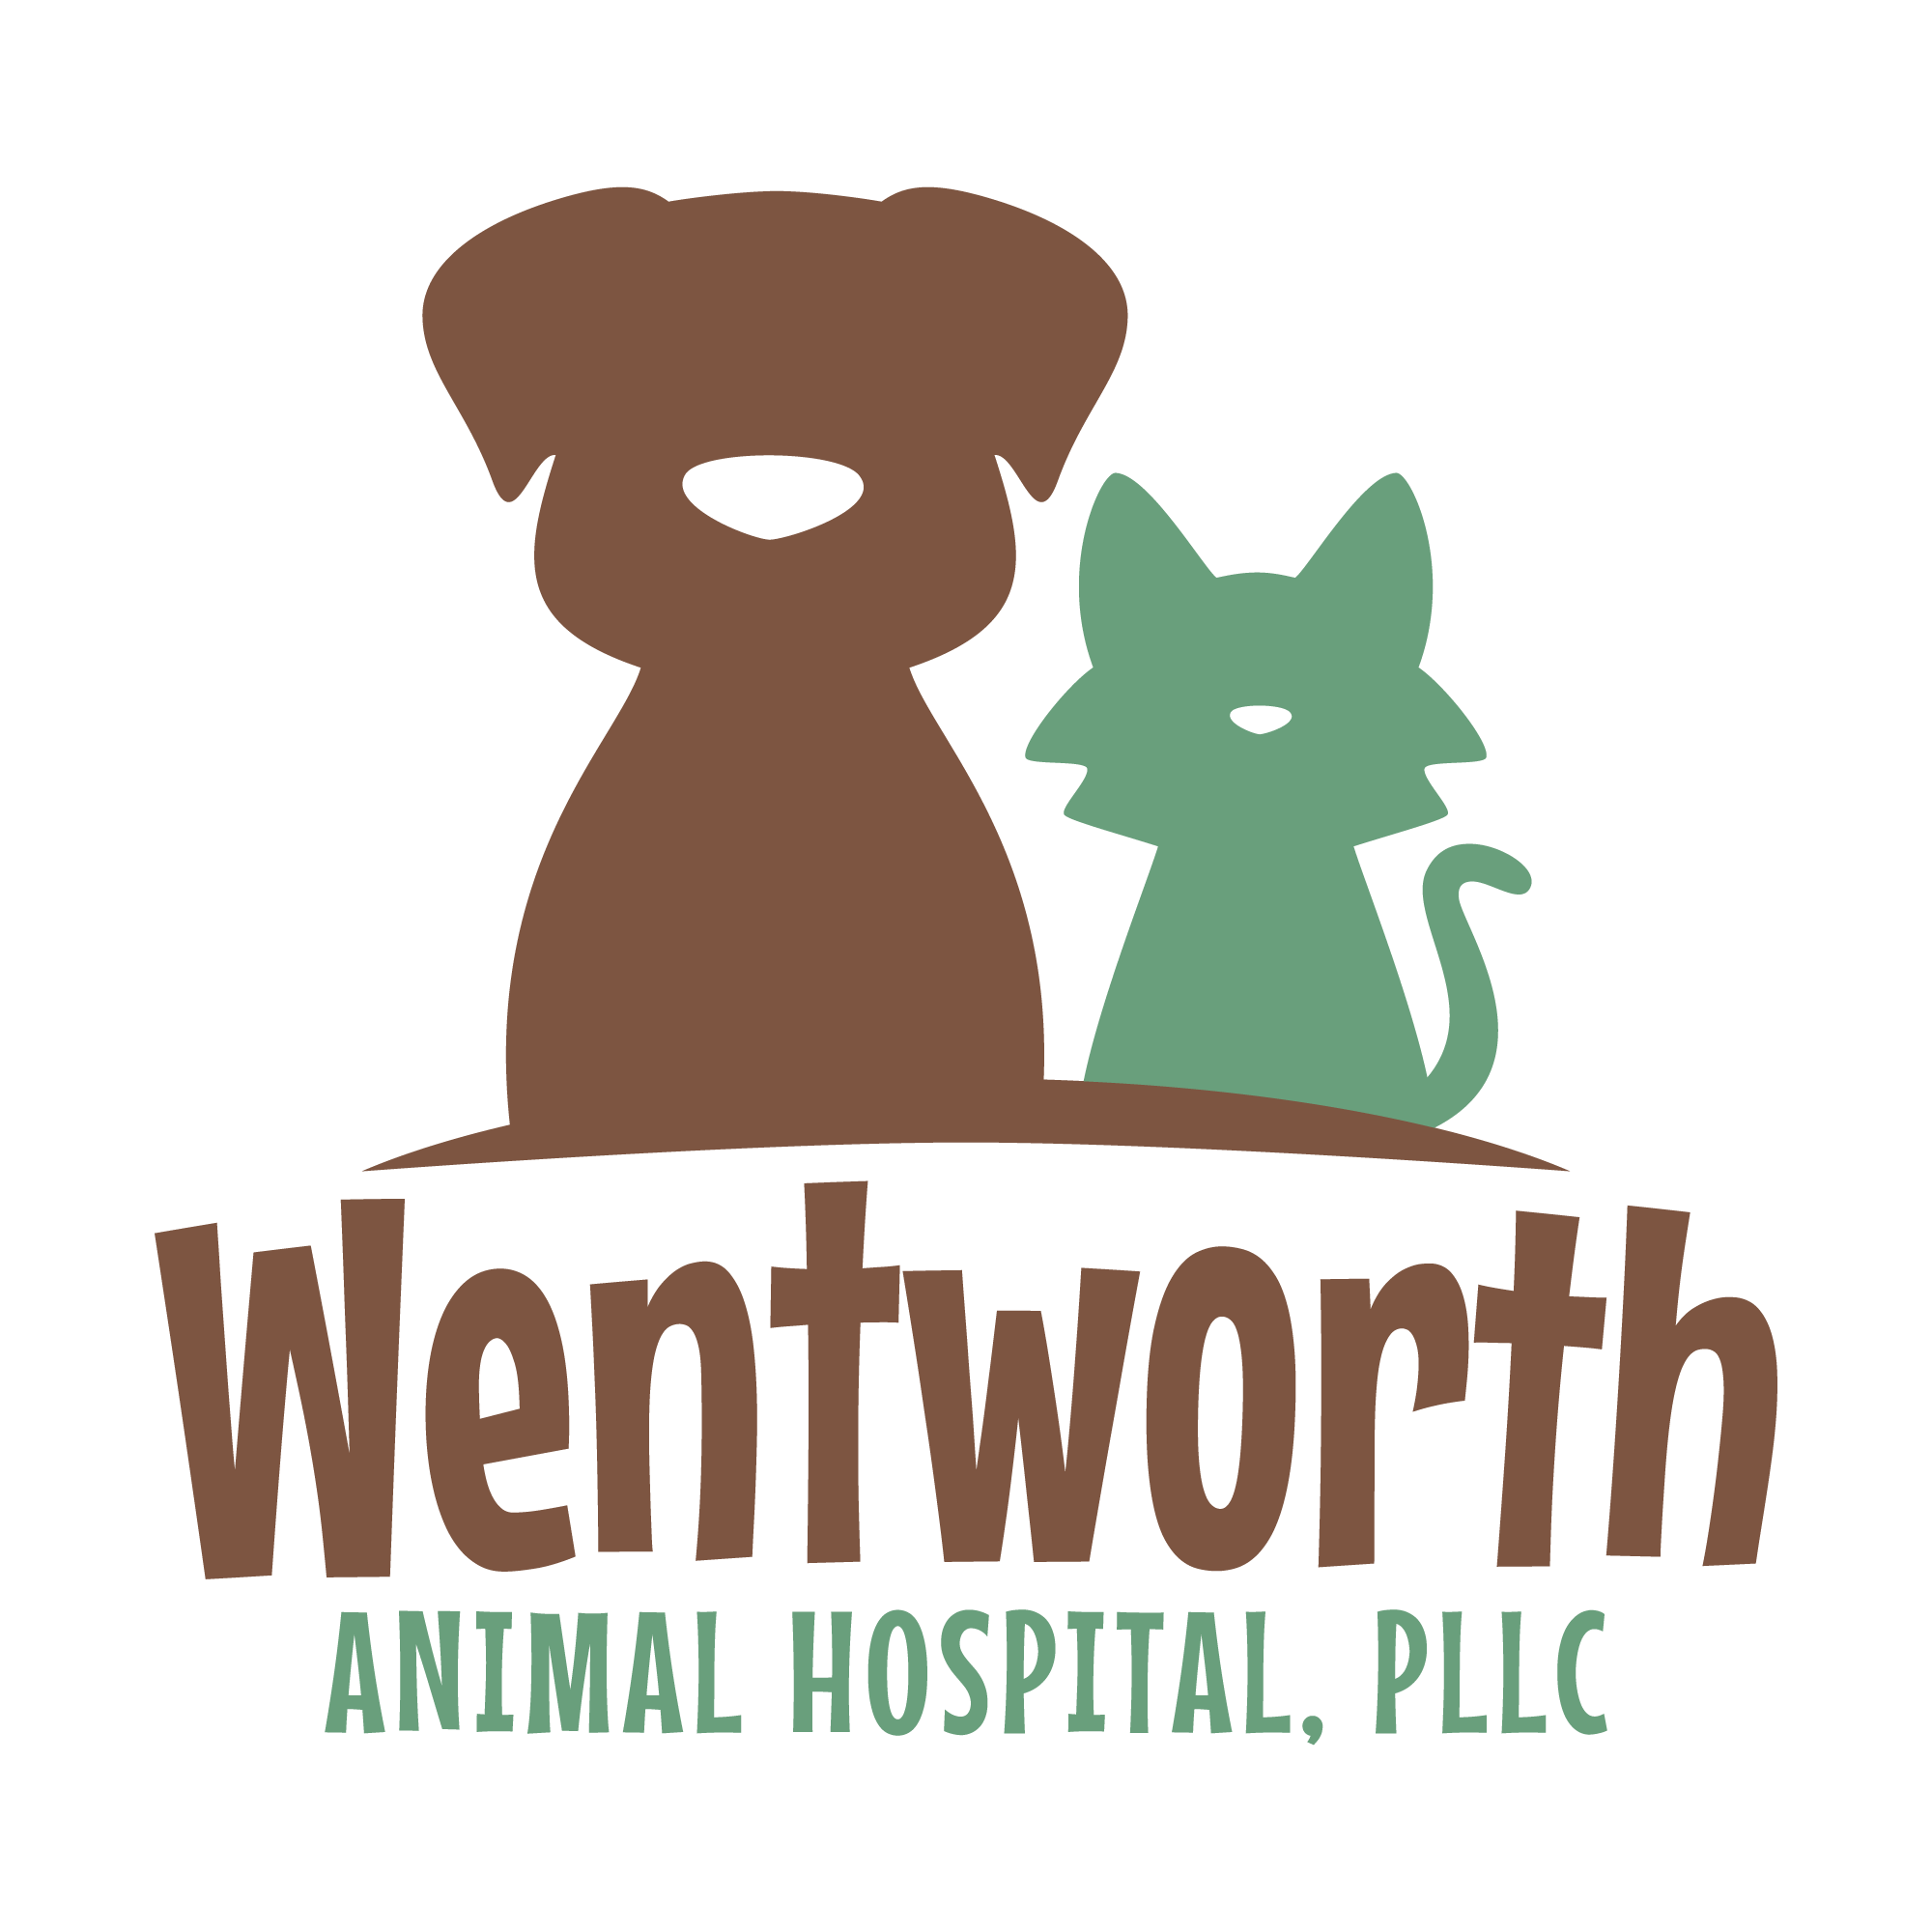 Wentworth Animal Hospital